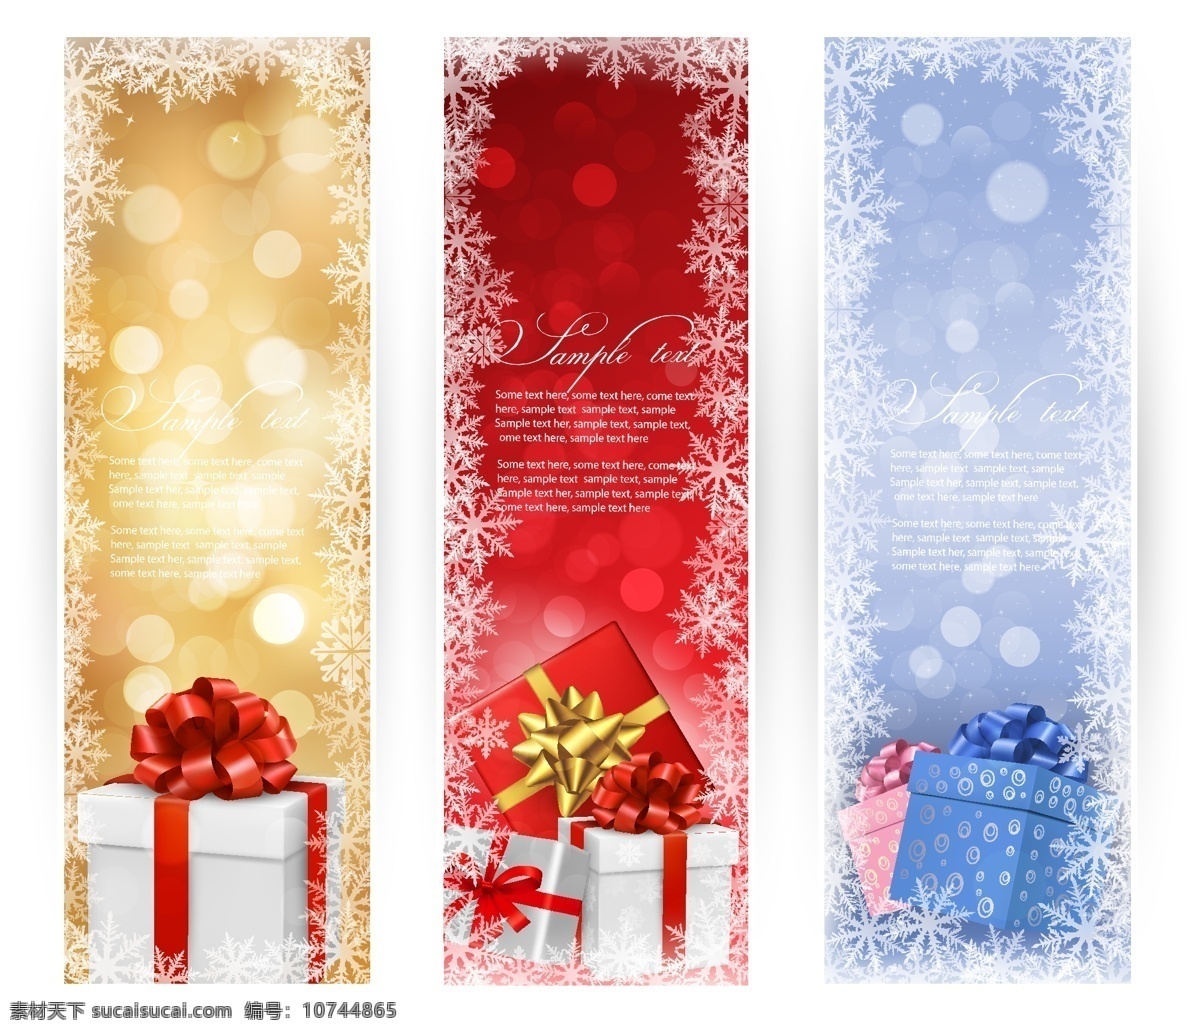 礼品盒 圣诞 小册子 背景壁纸 旗帜和徽章 庆典和聚会 圣诞节 设计元素 节日和季节 色带和标签 模板和模型